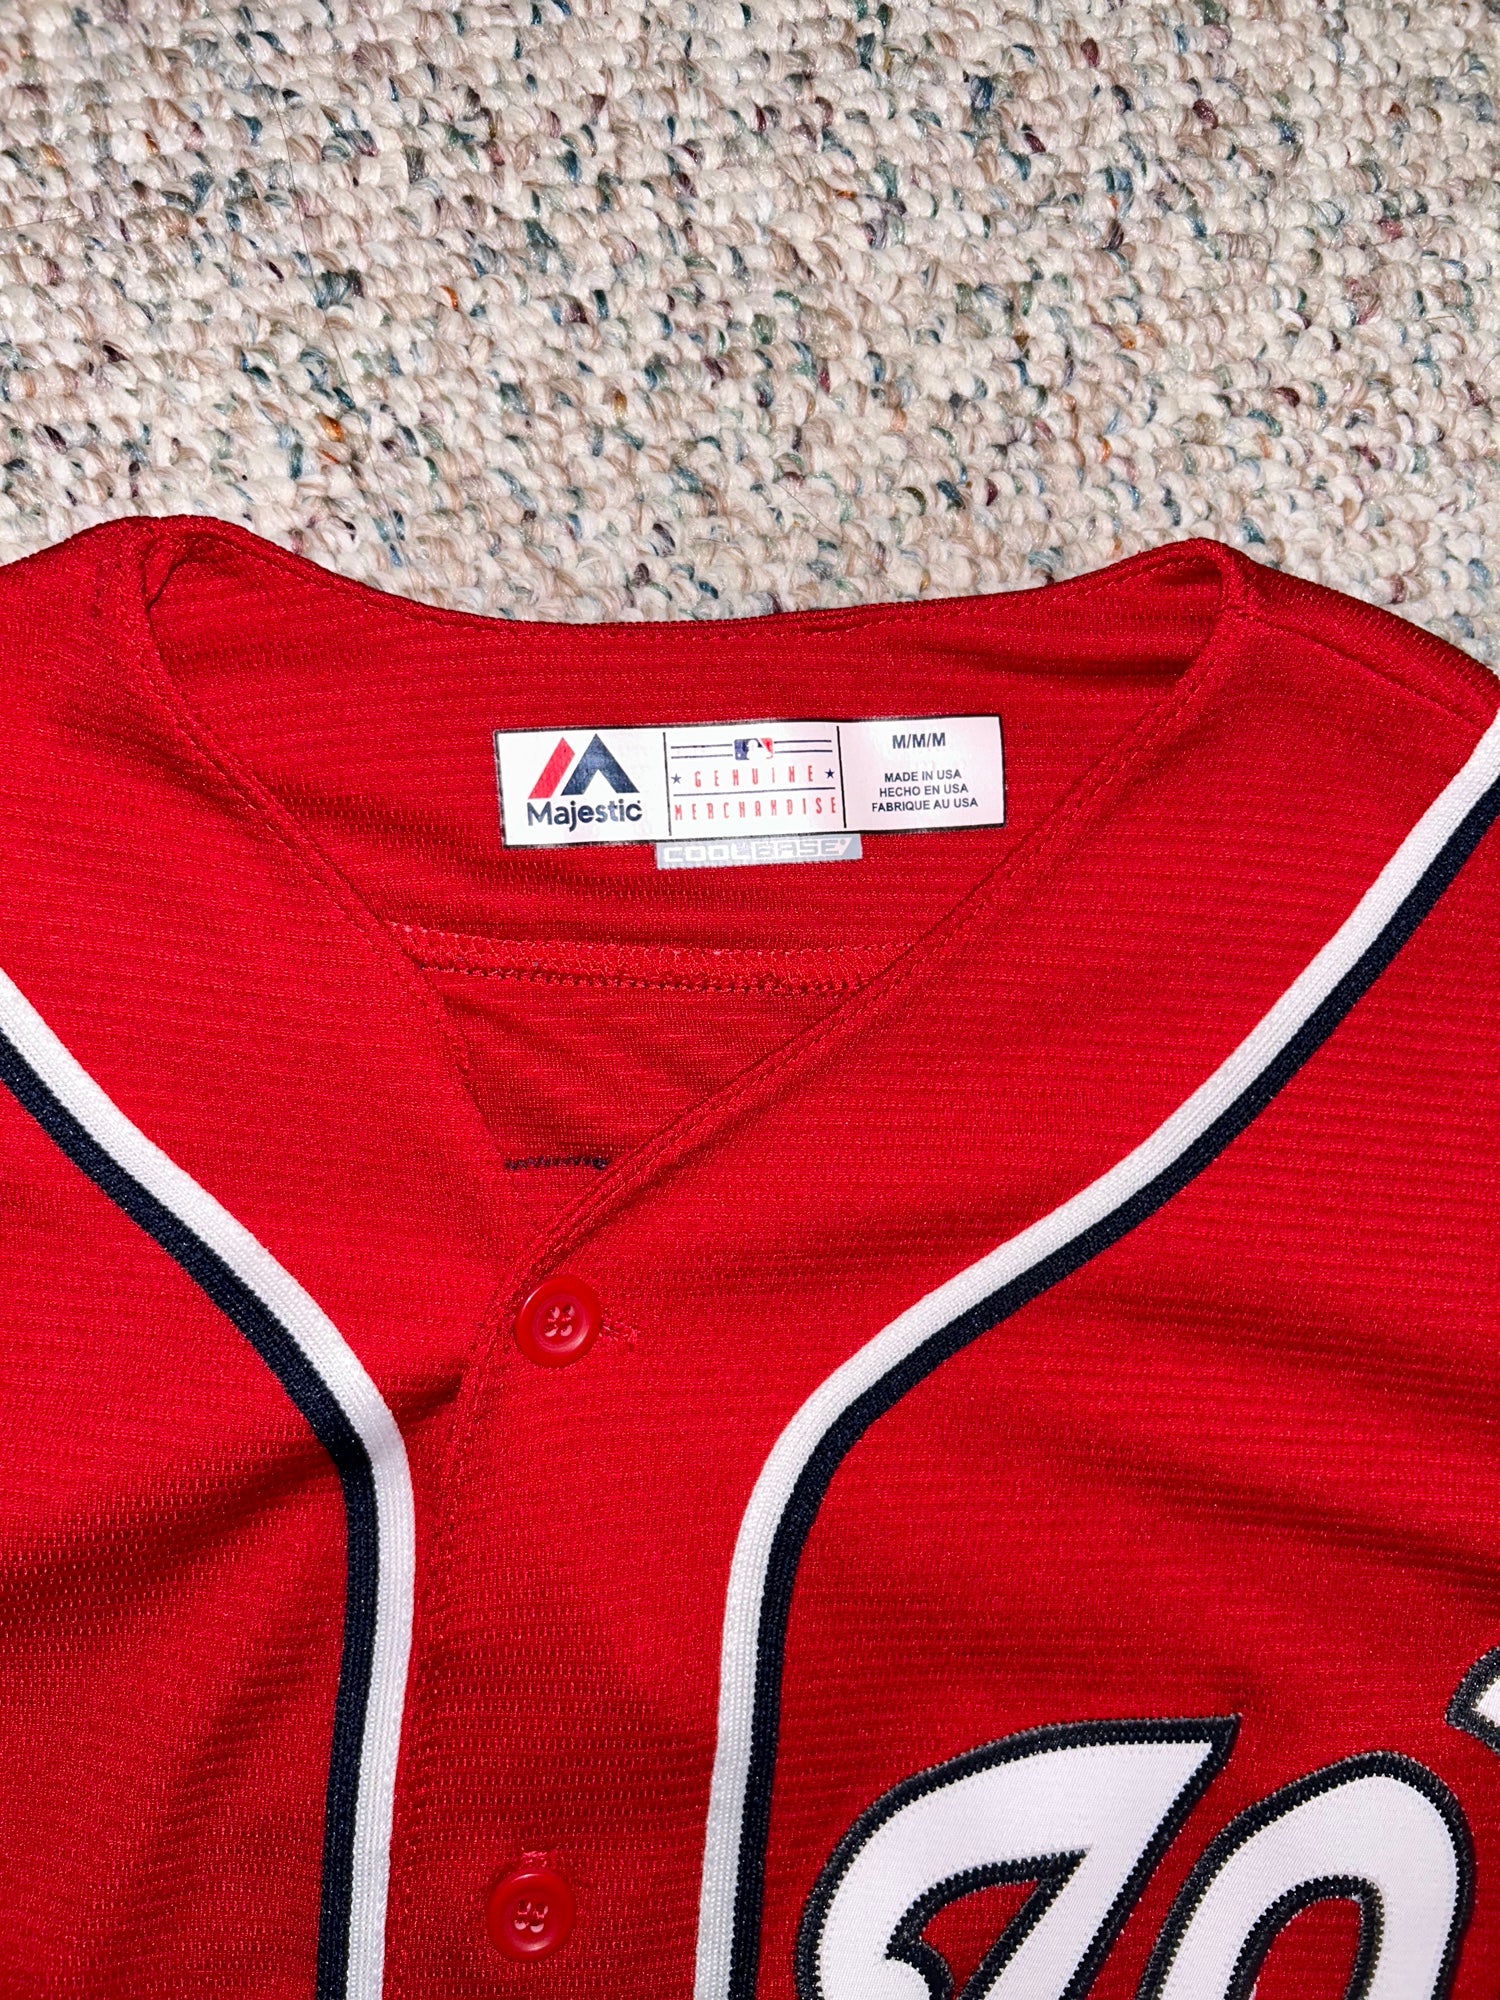 WASHINGTON NATIONALS Bryce Harper MLB Majestic Stitched Baseball Jersey  MENS XL